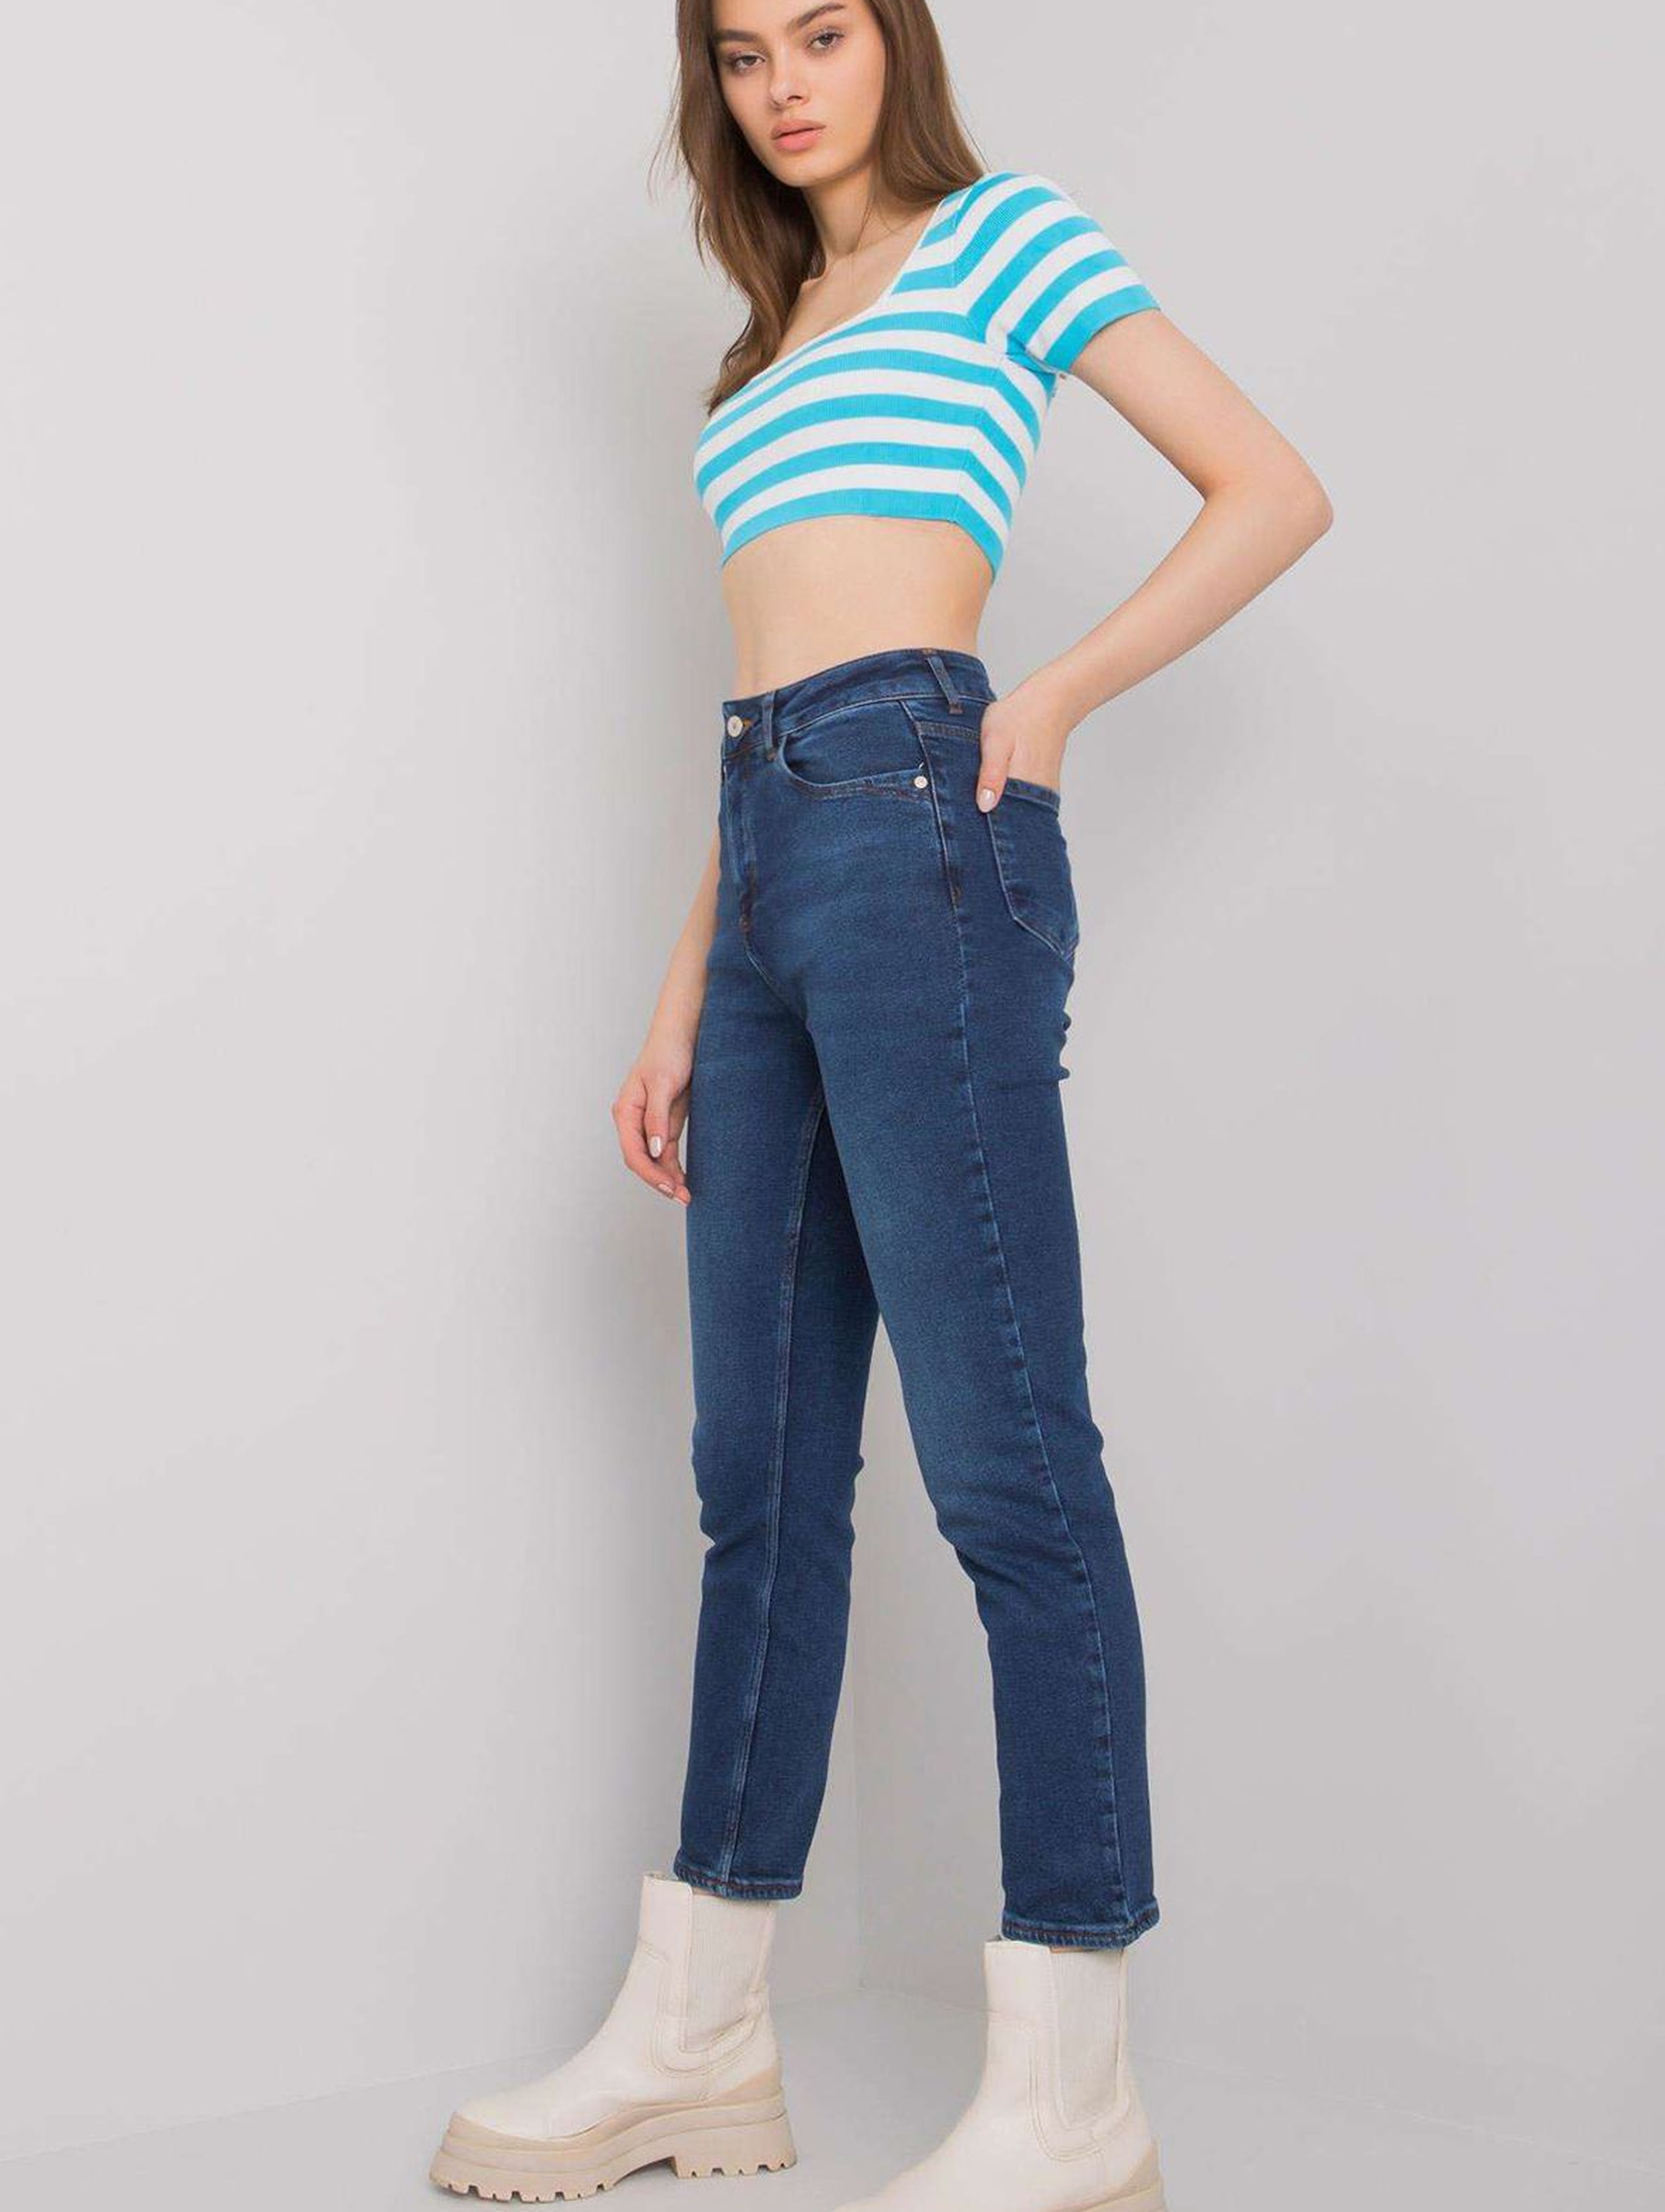 Niebieskie jeansy damskie